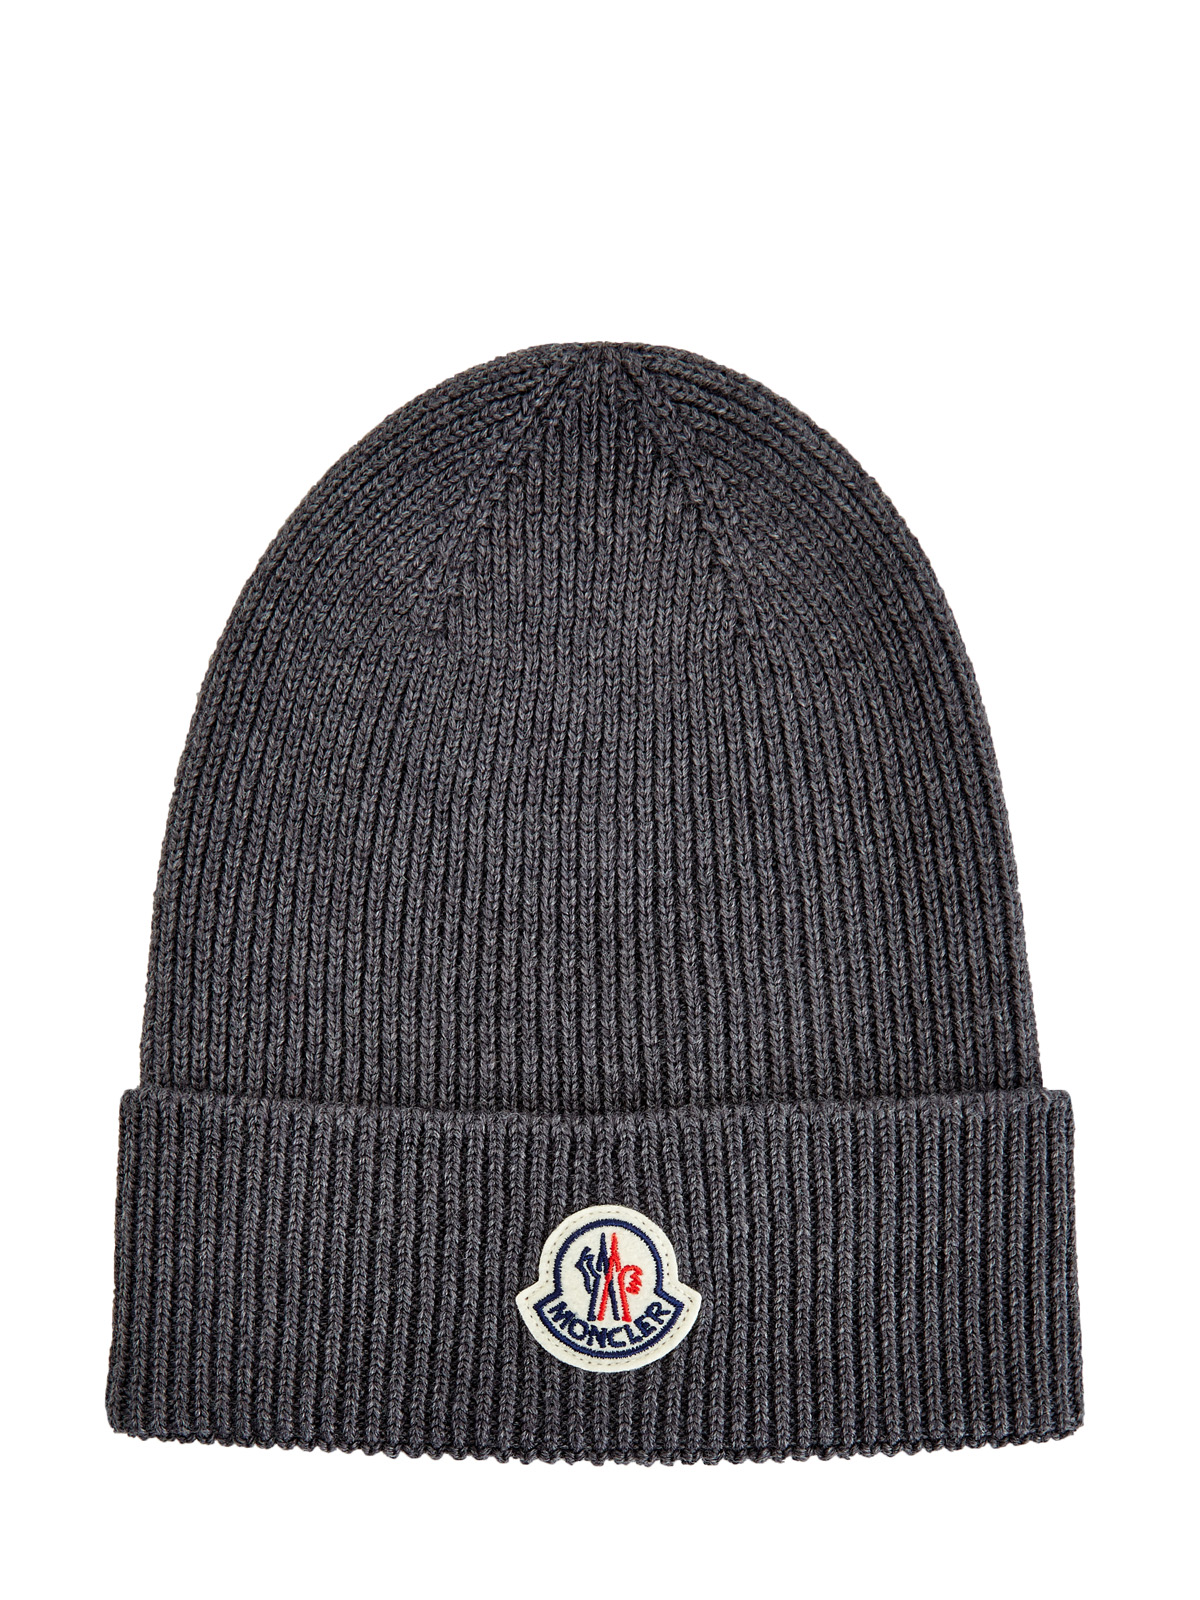 Базовая шапка из шерстяной пряжи с логотипом бренда MONCLER, цвет серый, размер 48;50 - фото 1